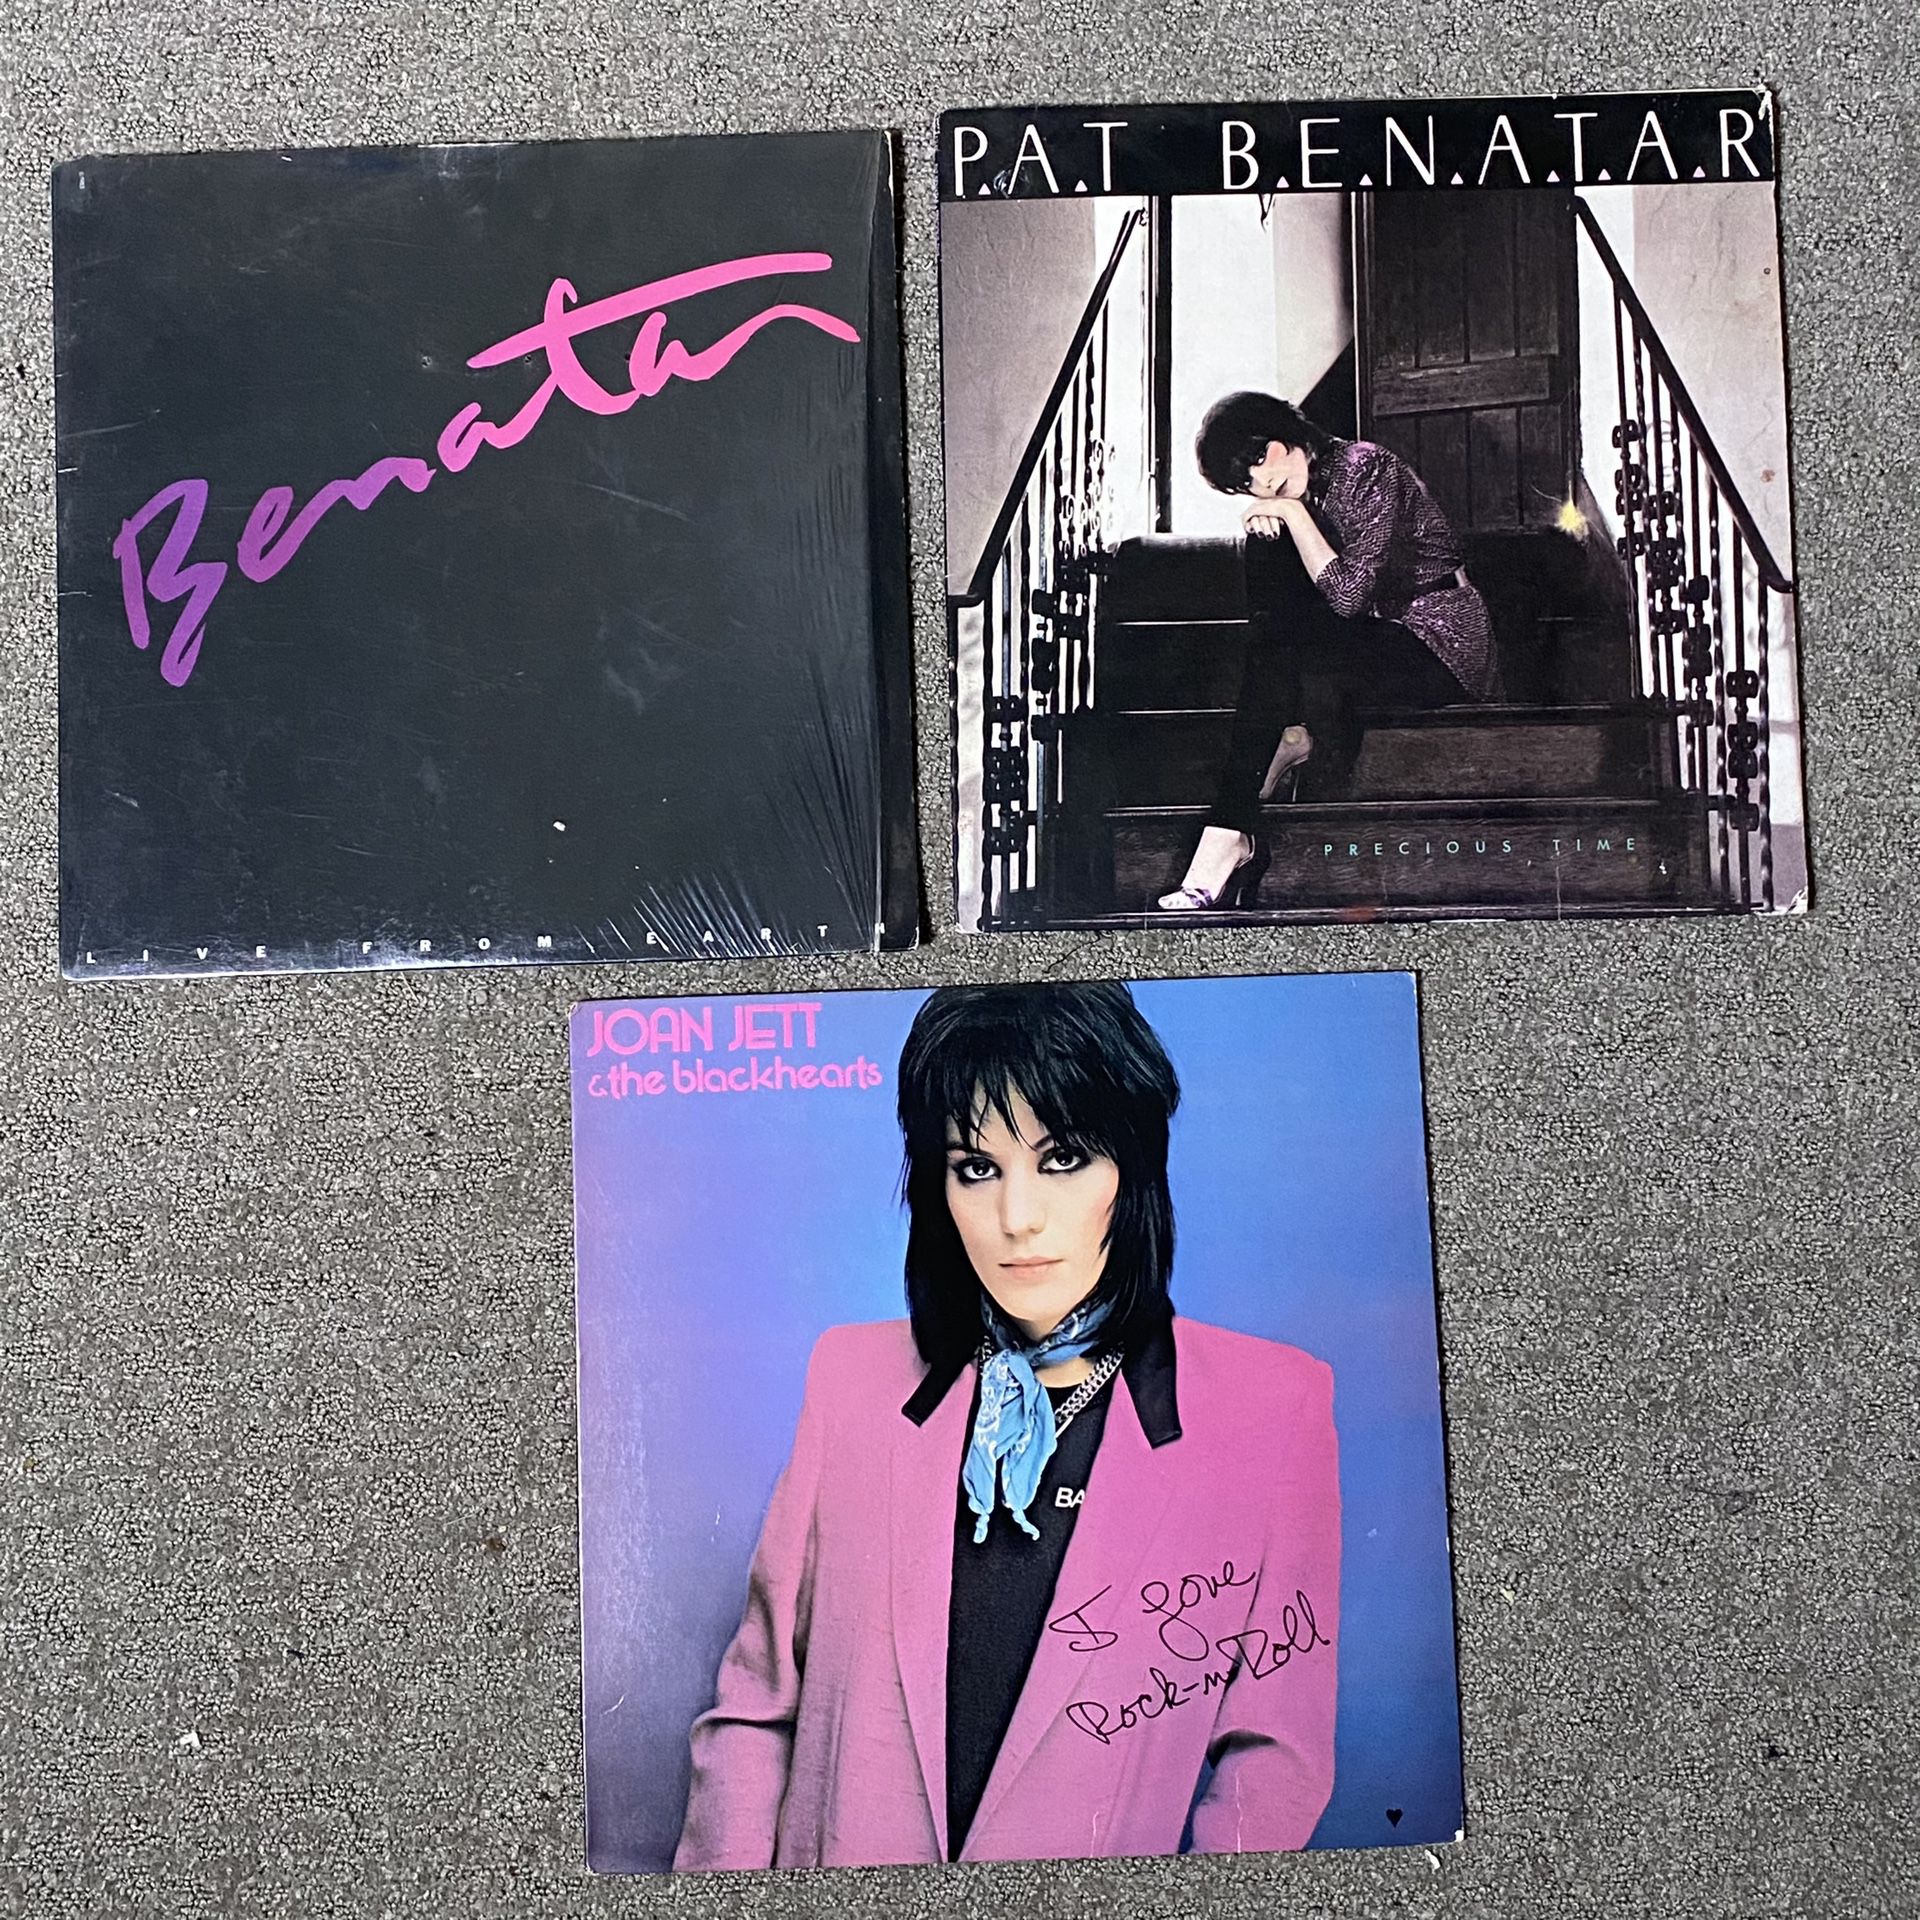 Lot of 3 Vinyl Records - Pat Benatar & Joan Jett